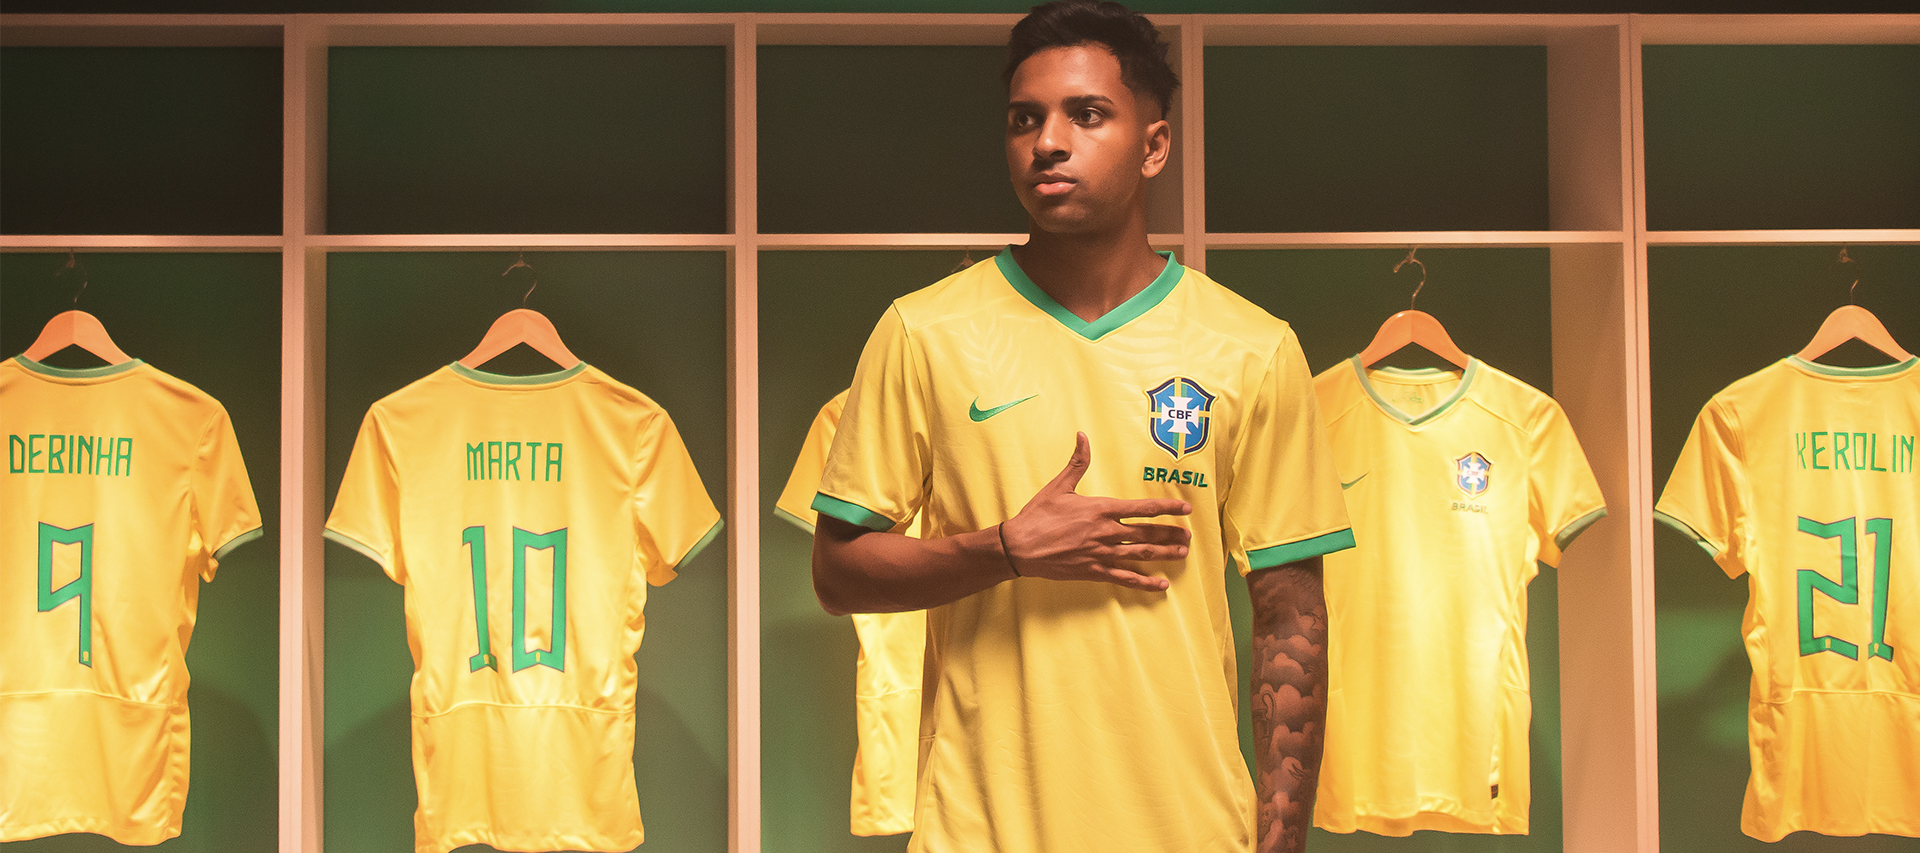 Perfis oficiais da Copa do Brasil passam a se chamar 'Portal da